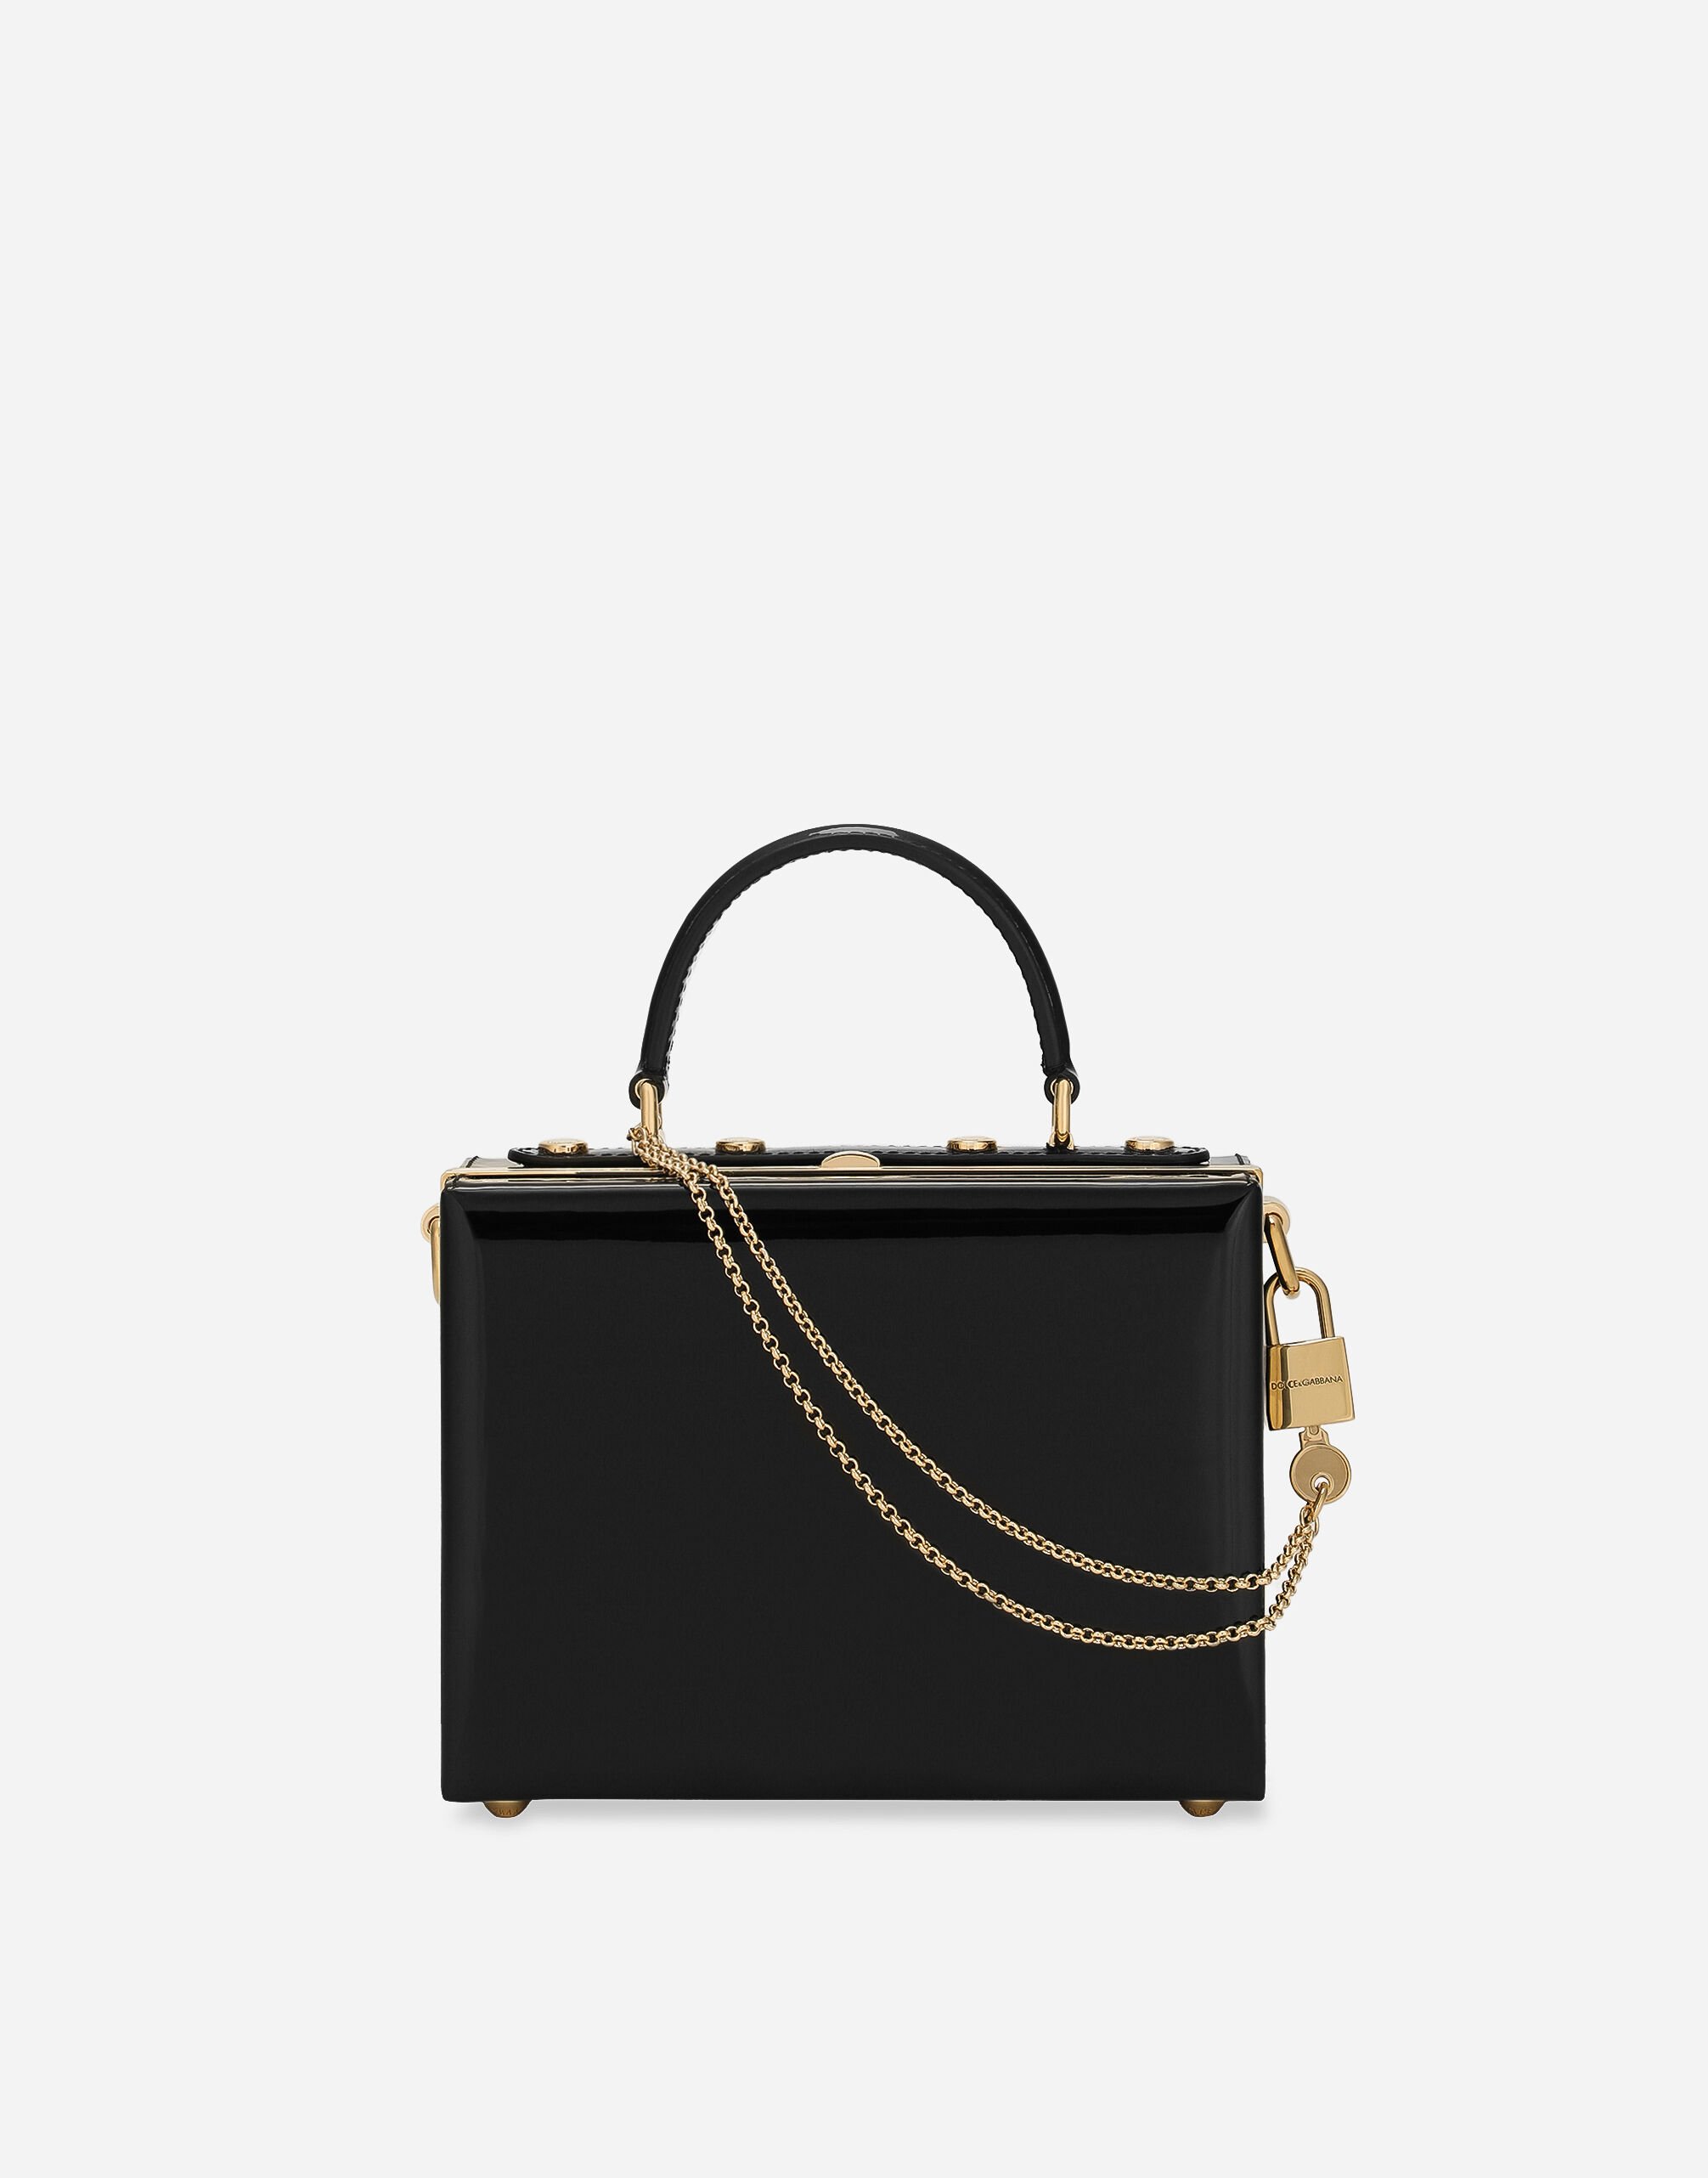 Dolce & Gabbana Dolce Box handbag Black BB7100AW437